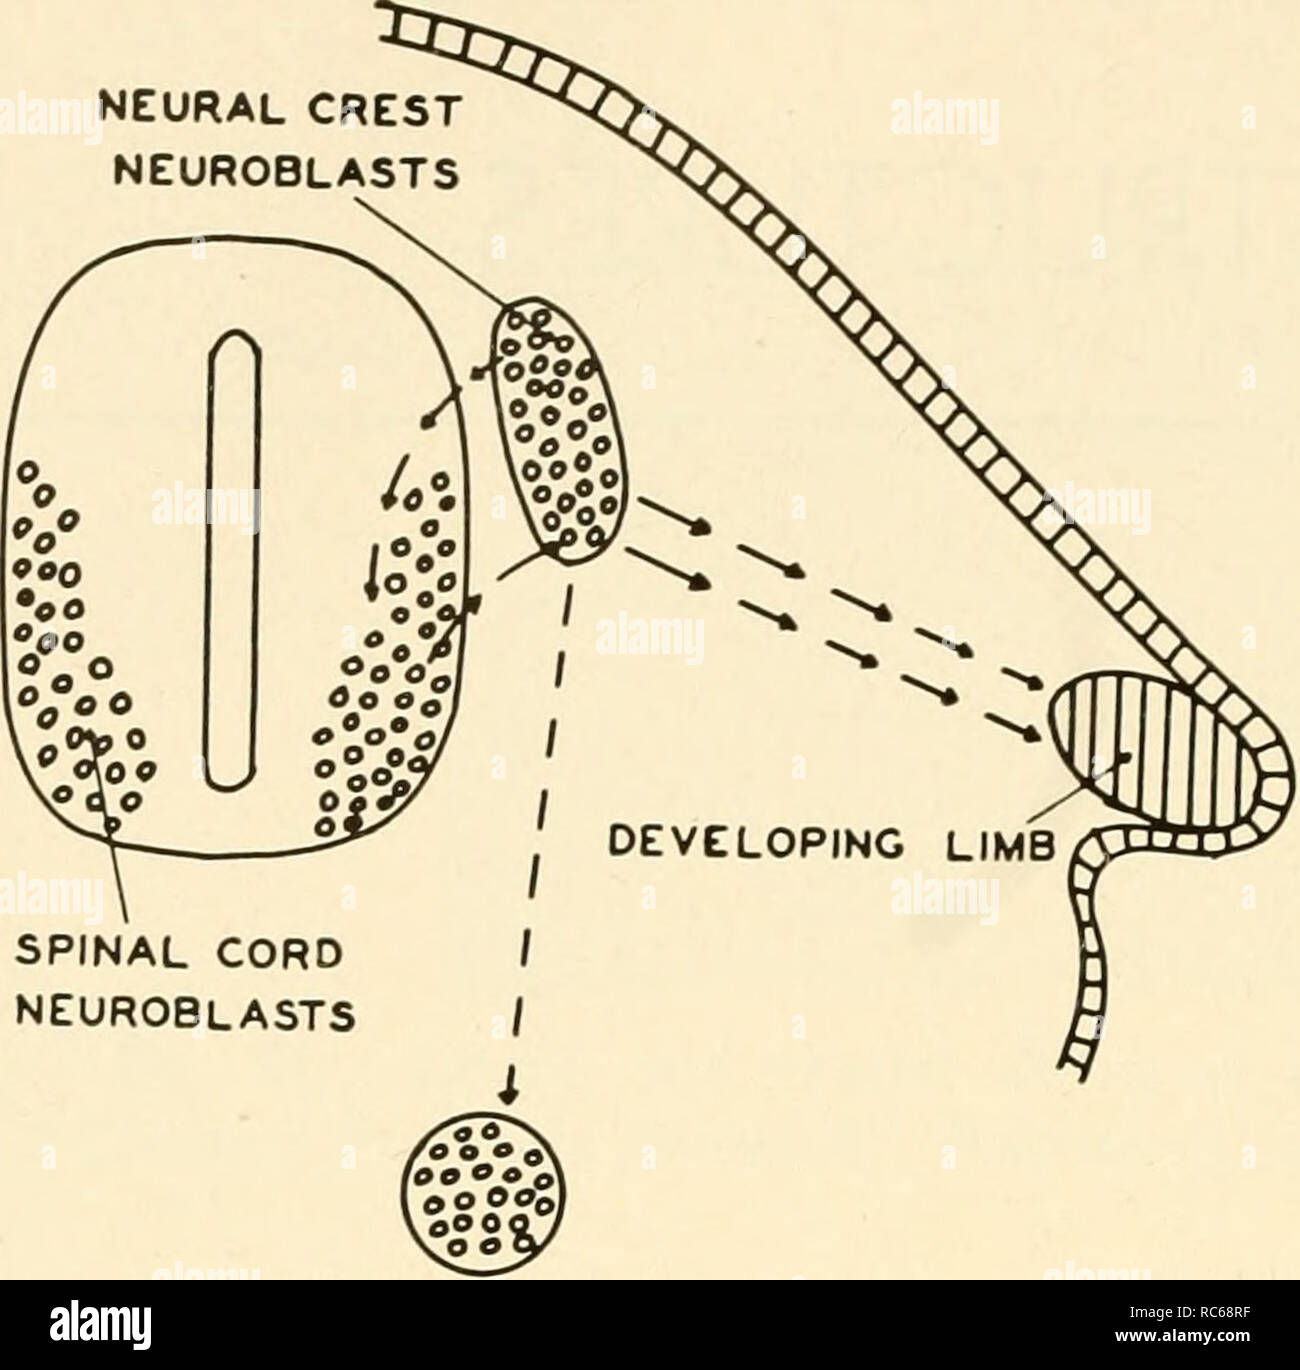 . Embriologia. Embriologia; embriologia; genealogia. 142 embriologia. Fig. 82. Il rapporto dell'arto in via di sviluppo alla neuroblasts che formano i nervi degli arti. Il neuroblasts sono mostrati come piccole cellule arrotondate nel tubo neurale e nella cresta neurale. Una linea tratteggiata indica la migrazione di neuroblasts dalla cresta neurale per la regione in cui la i gangli simpatici formerà. Le frecce che collegano la cresta neurale con il midollo spinale mostrano il percorso di sviluppo di nervi. Analogamente le frecce dalla cresta neurale all'arto indicano il percorso dell'arto nervi. Ciò che dirige o induce Foto Stock